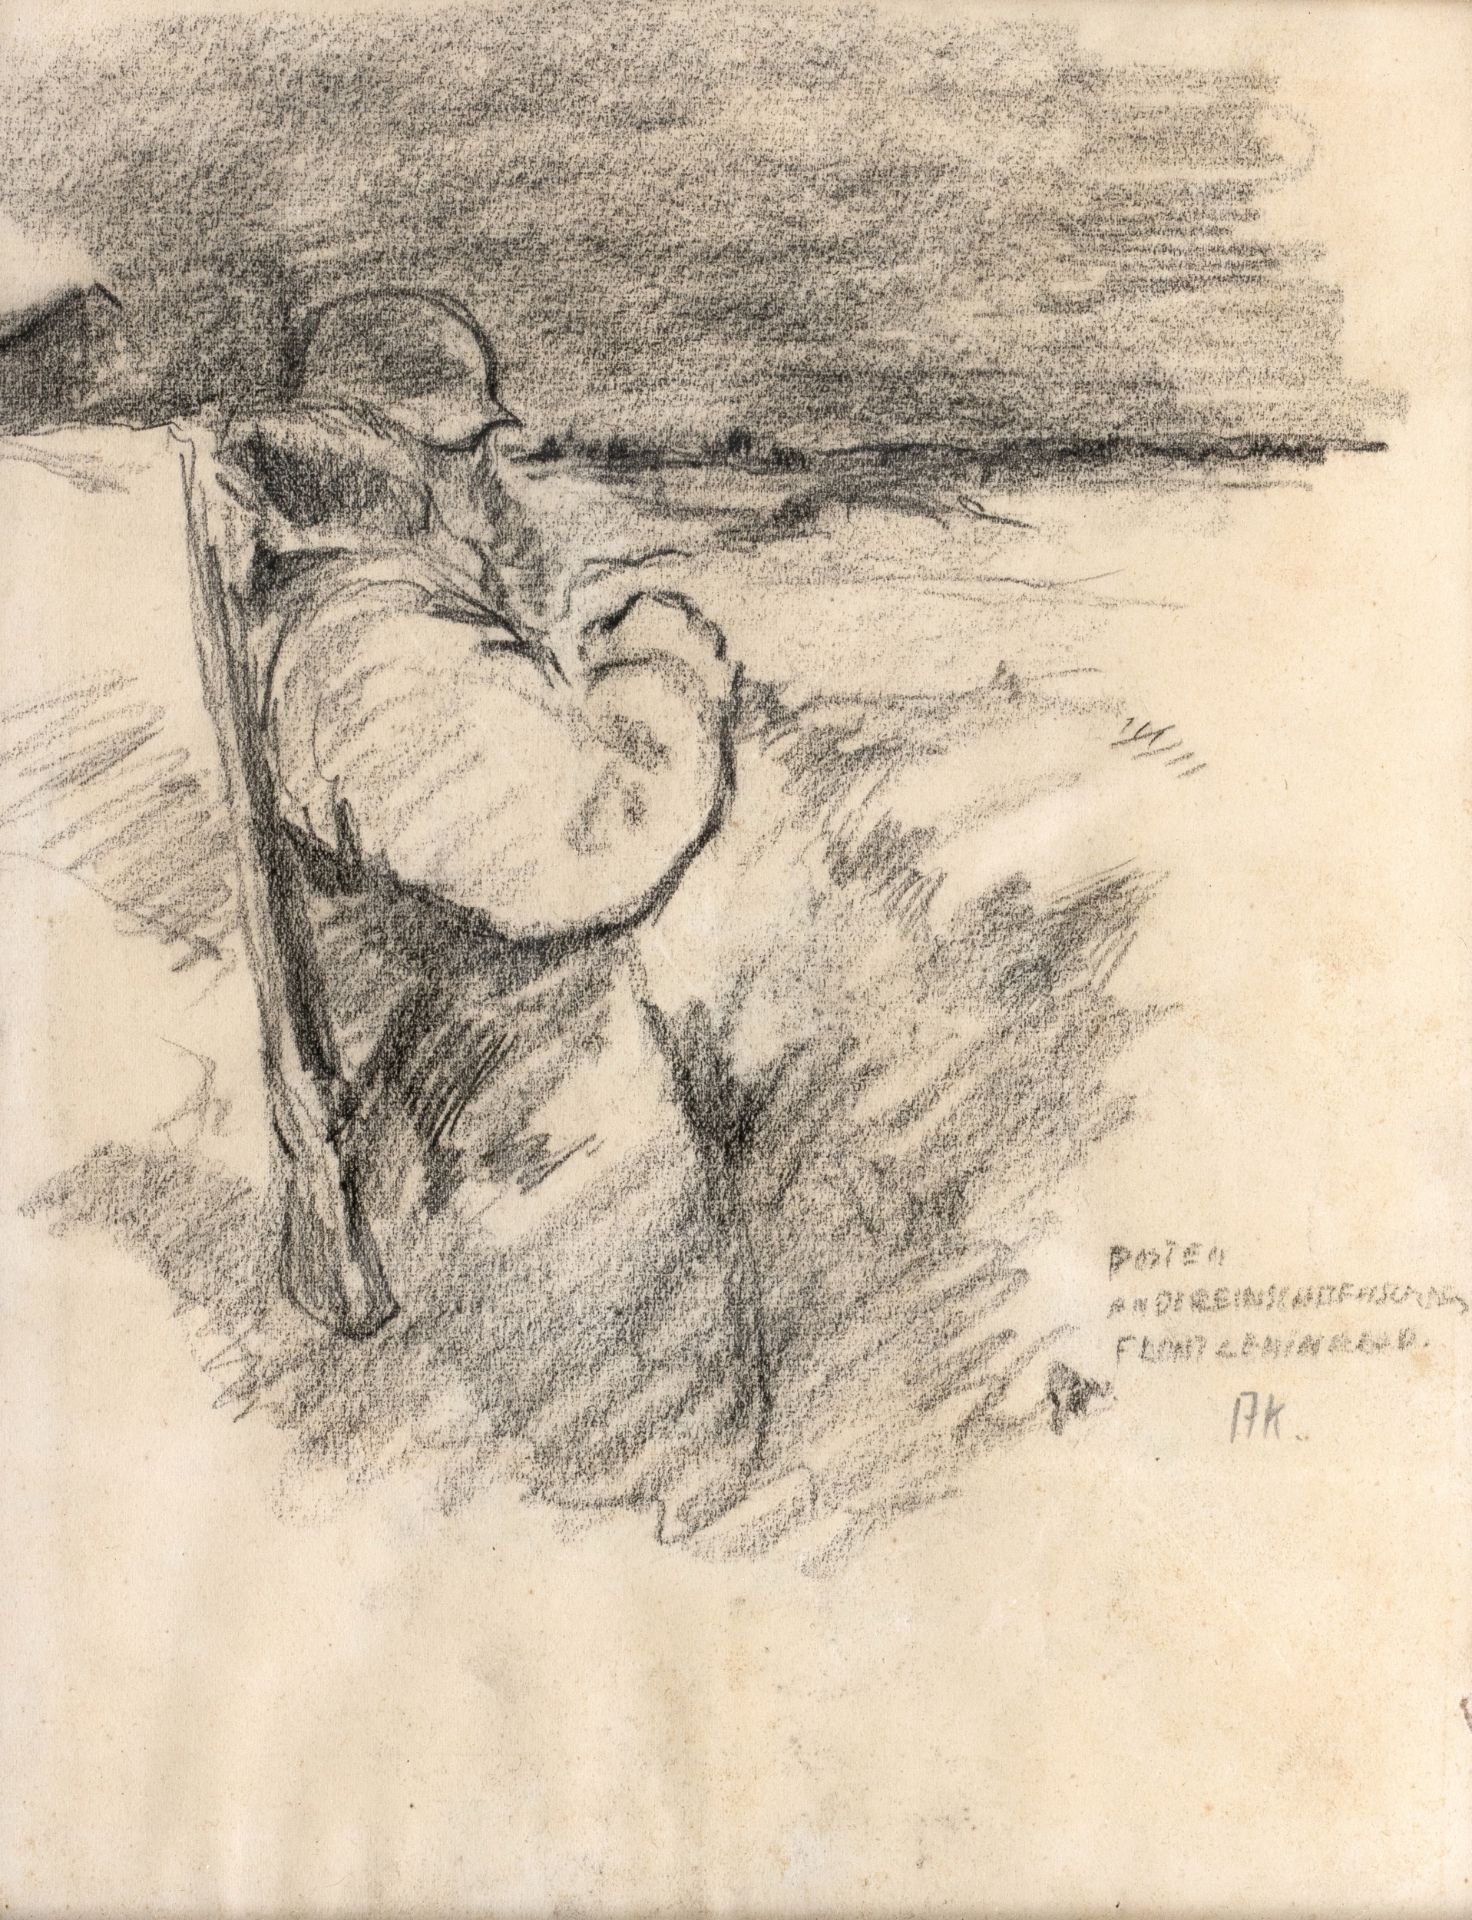 Kratzer, August (Gustl) | 1913 Maxlrain bei Bad Aibling - 1943 gefallen in Ladogasee in Russland - Bild 3 aus 11